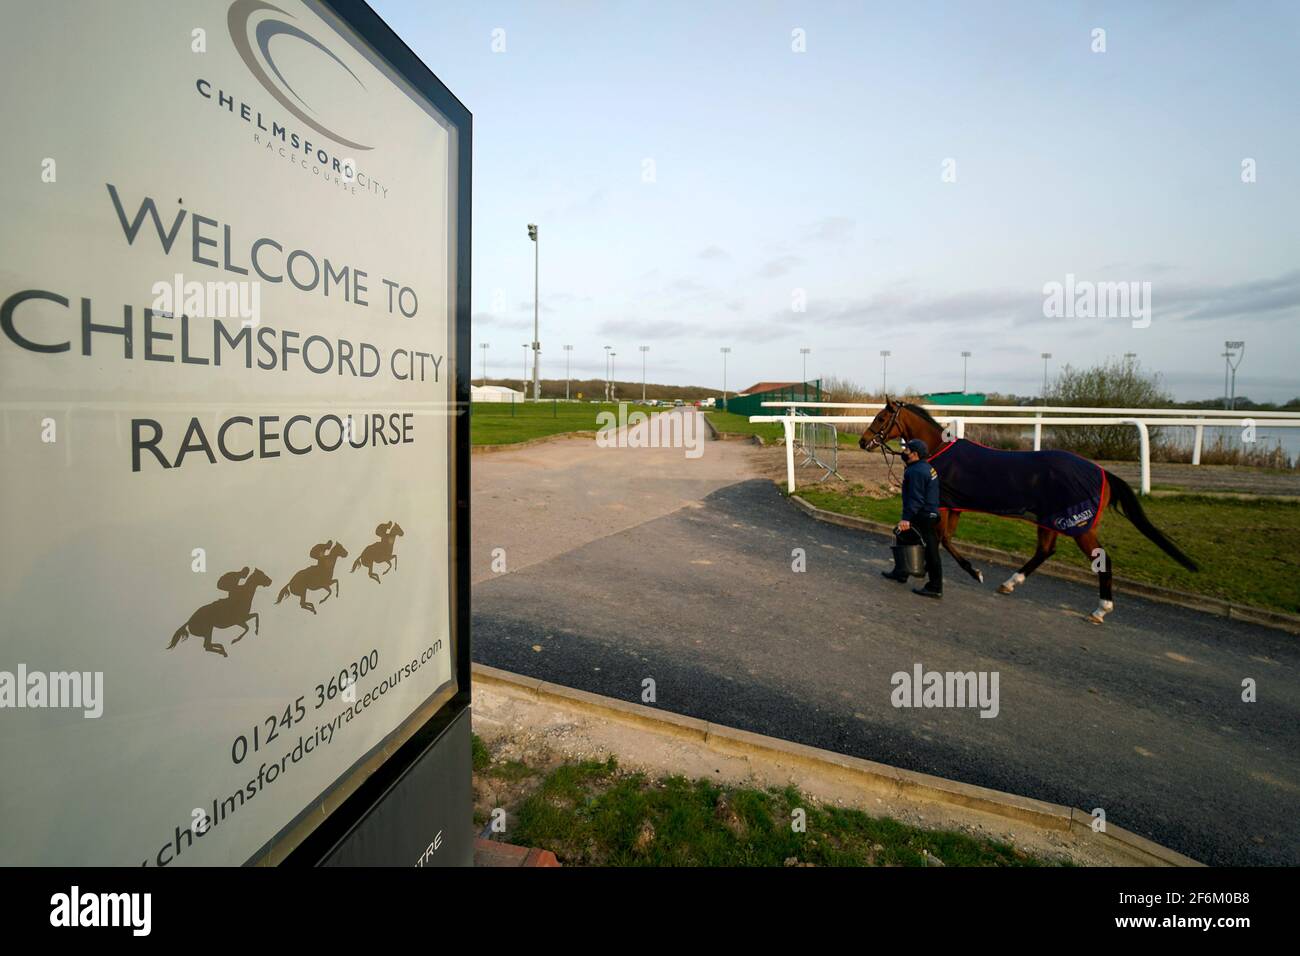 Ein Pferd wird an einem Willkommensschild an der Chelmsford City Racecourse vorbeigeführt. Bilddatum: Donnerstag, 1. April 2021. Stockfoto